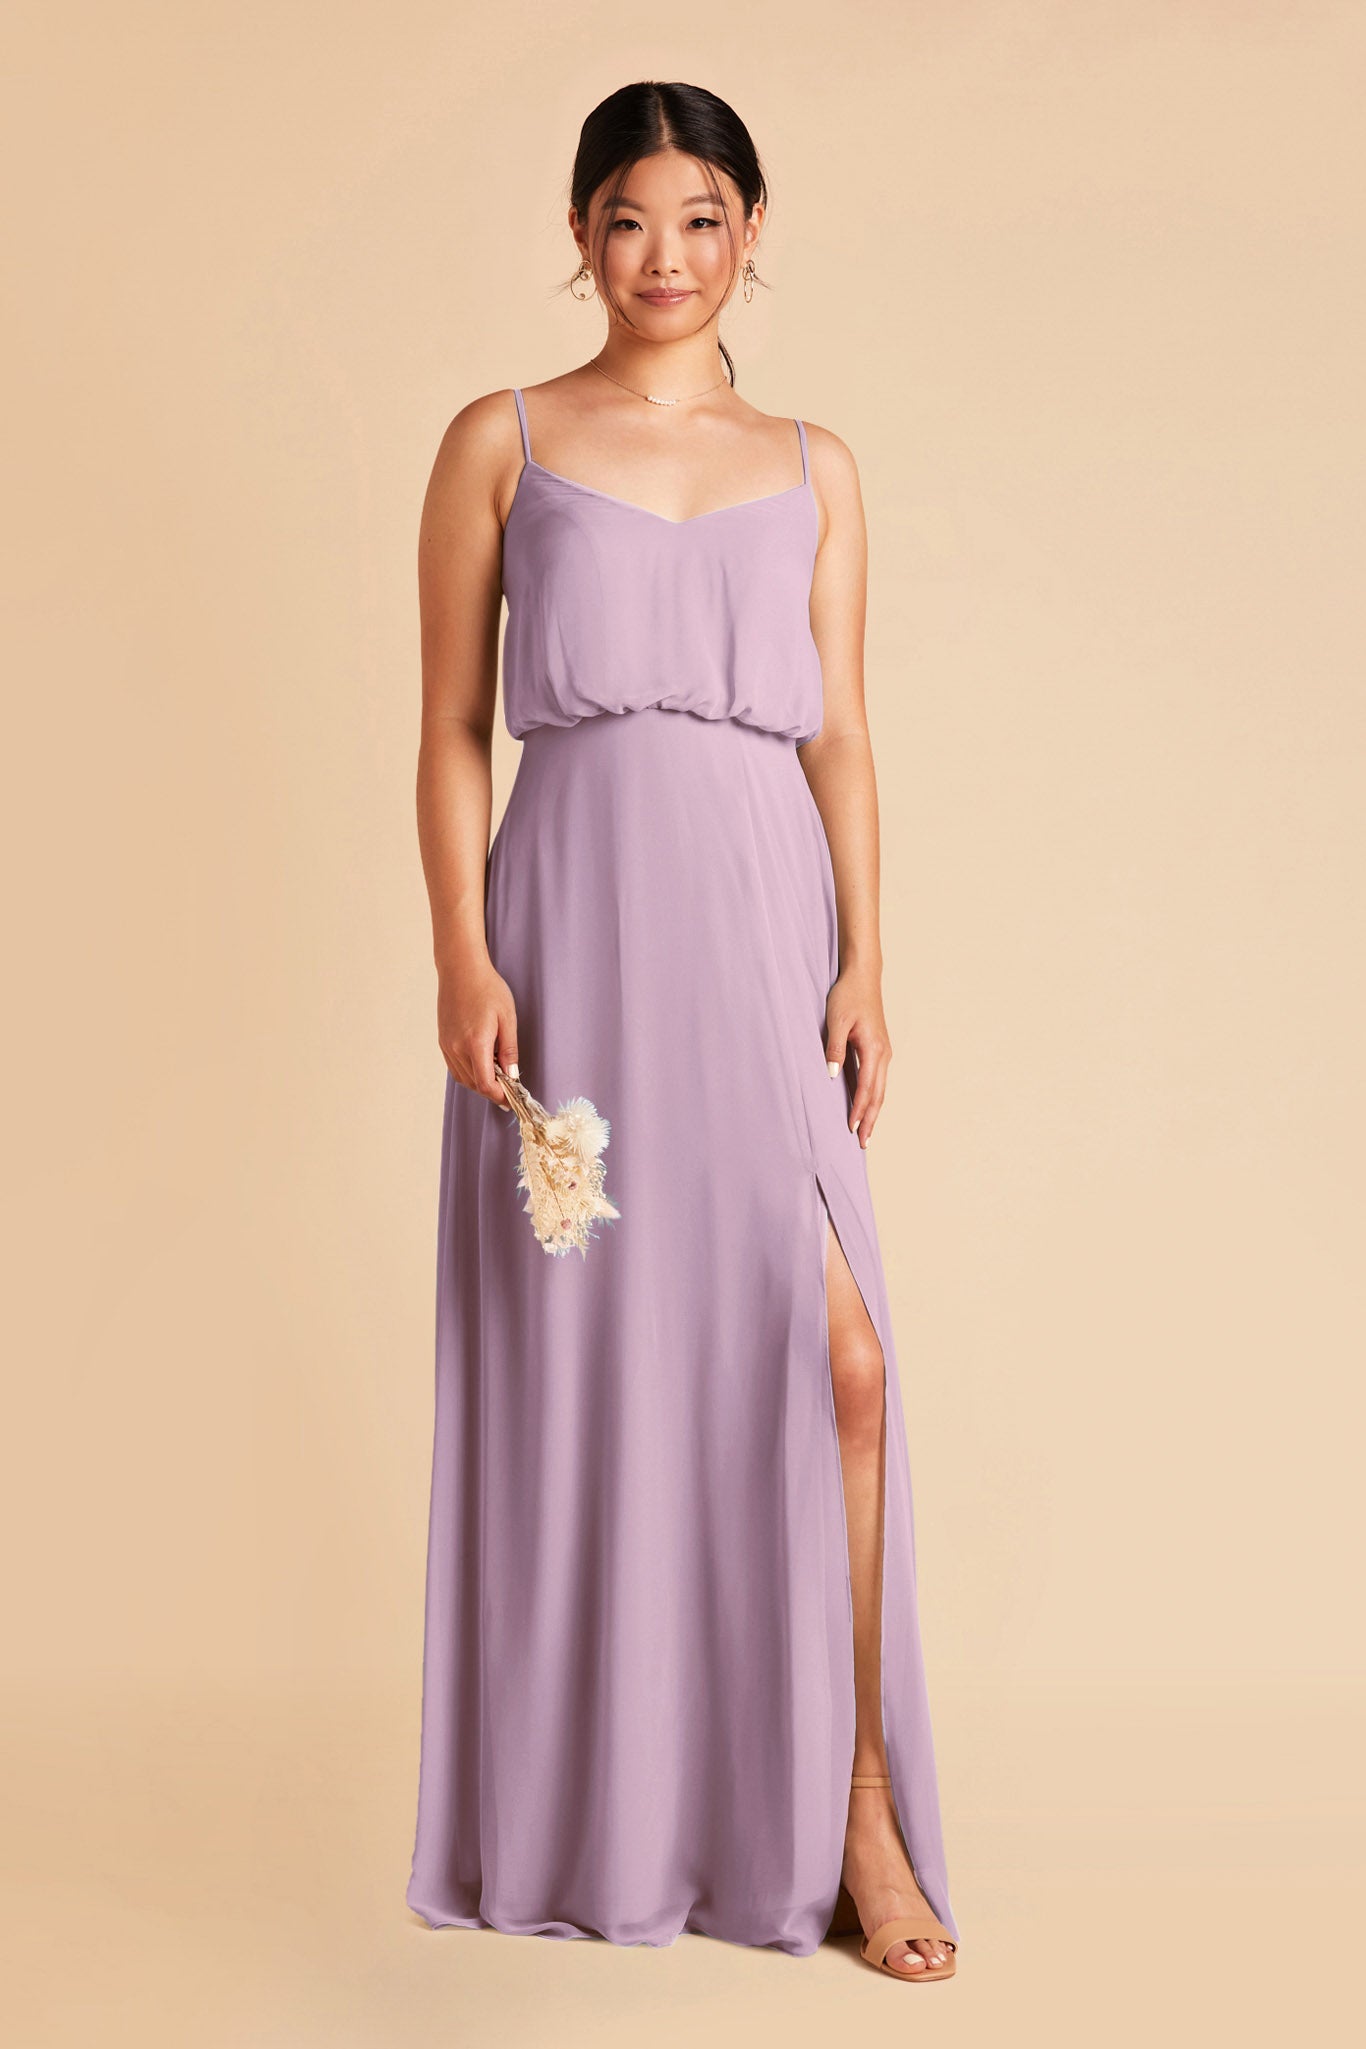 Lavender Gwennie Dress by Birdy Grey